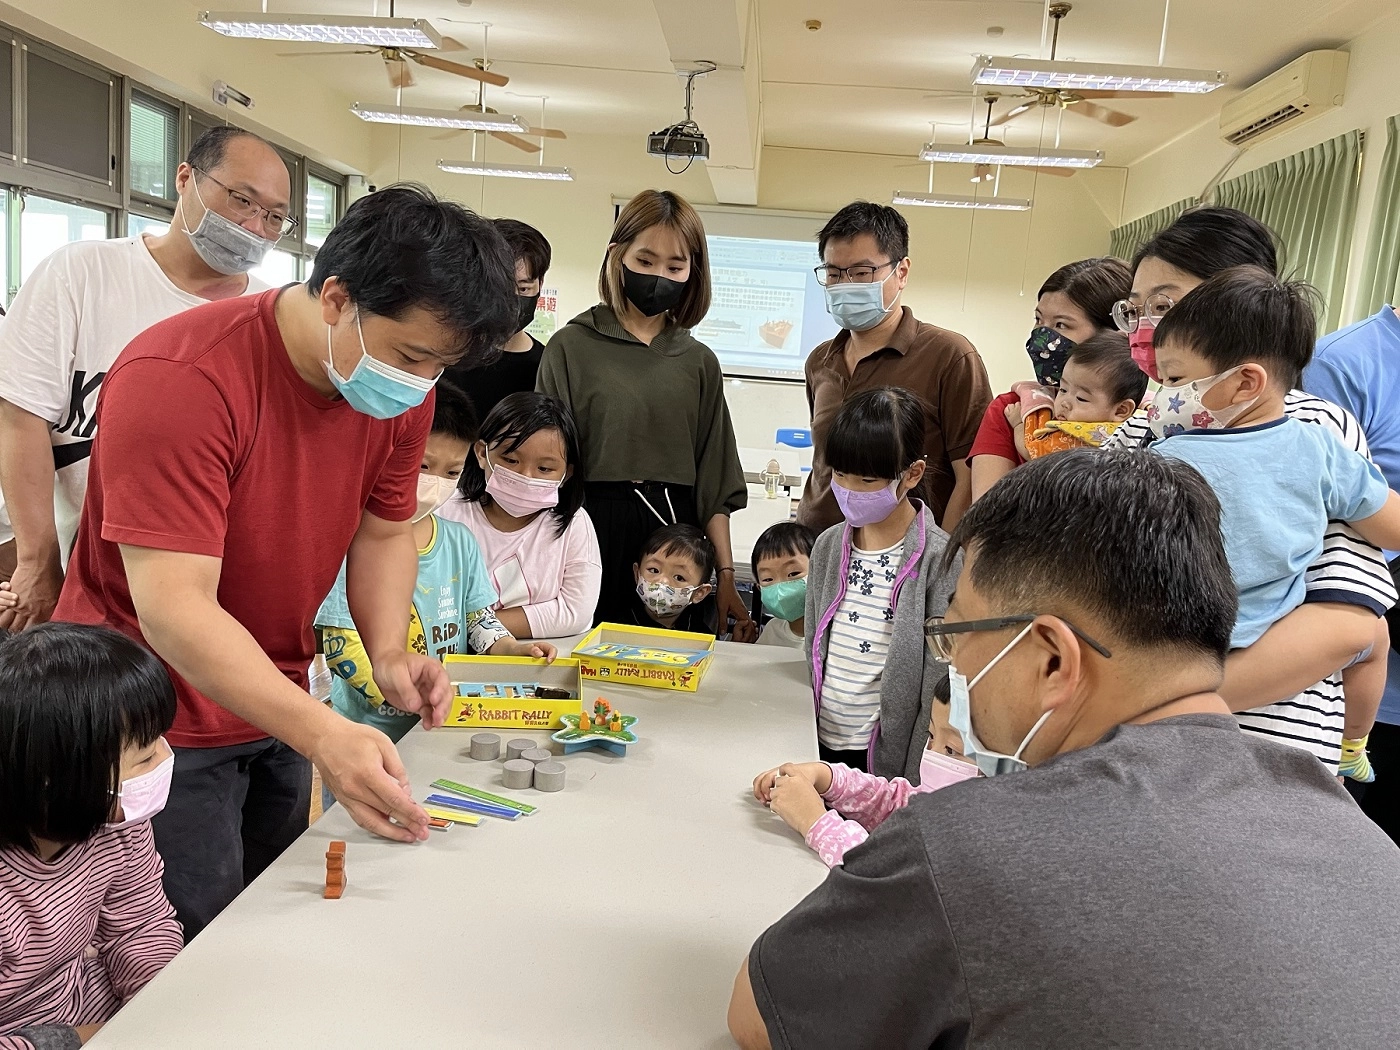 臺南市麻豆社區教保資源中心開放空間及圖書遊具讓社區親子同歡，減少3C產品的使用。